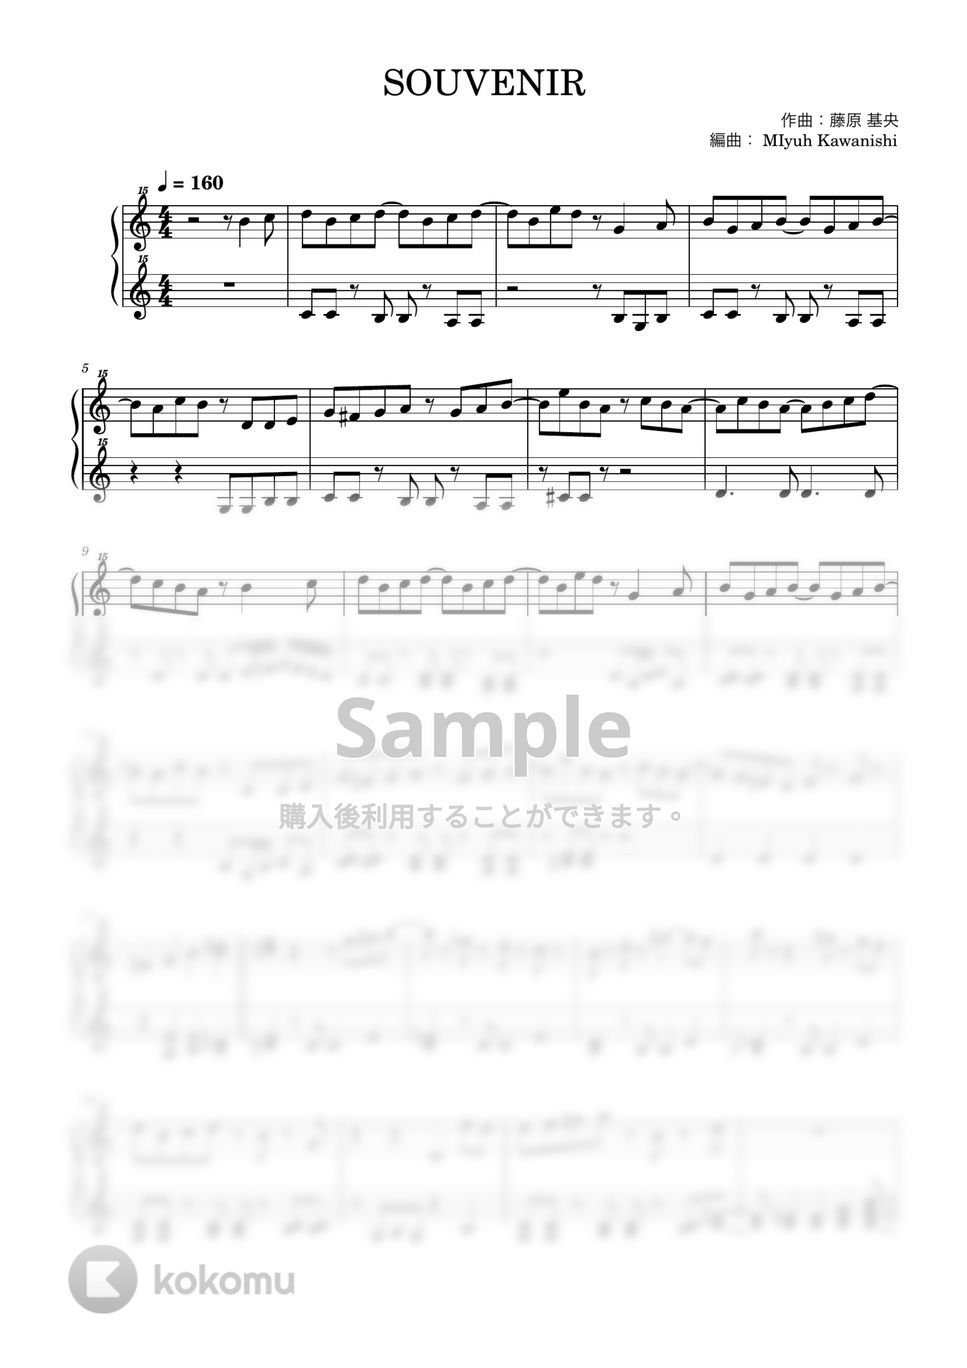 藤原基央 - SOUVENIR (スパイファミリー / トイピアノ / 32鍵盤) by 川西三裕